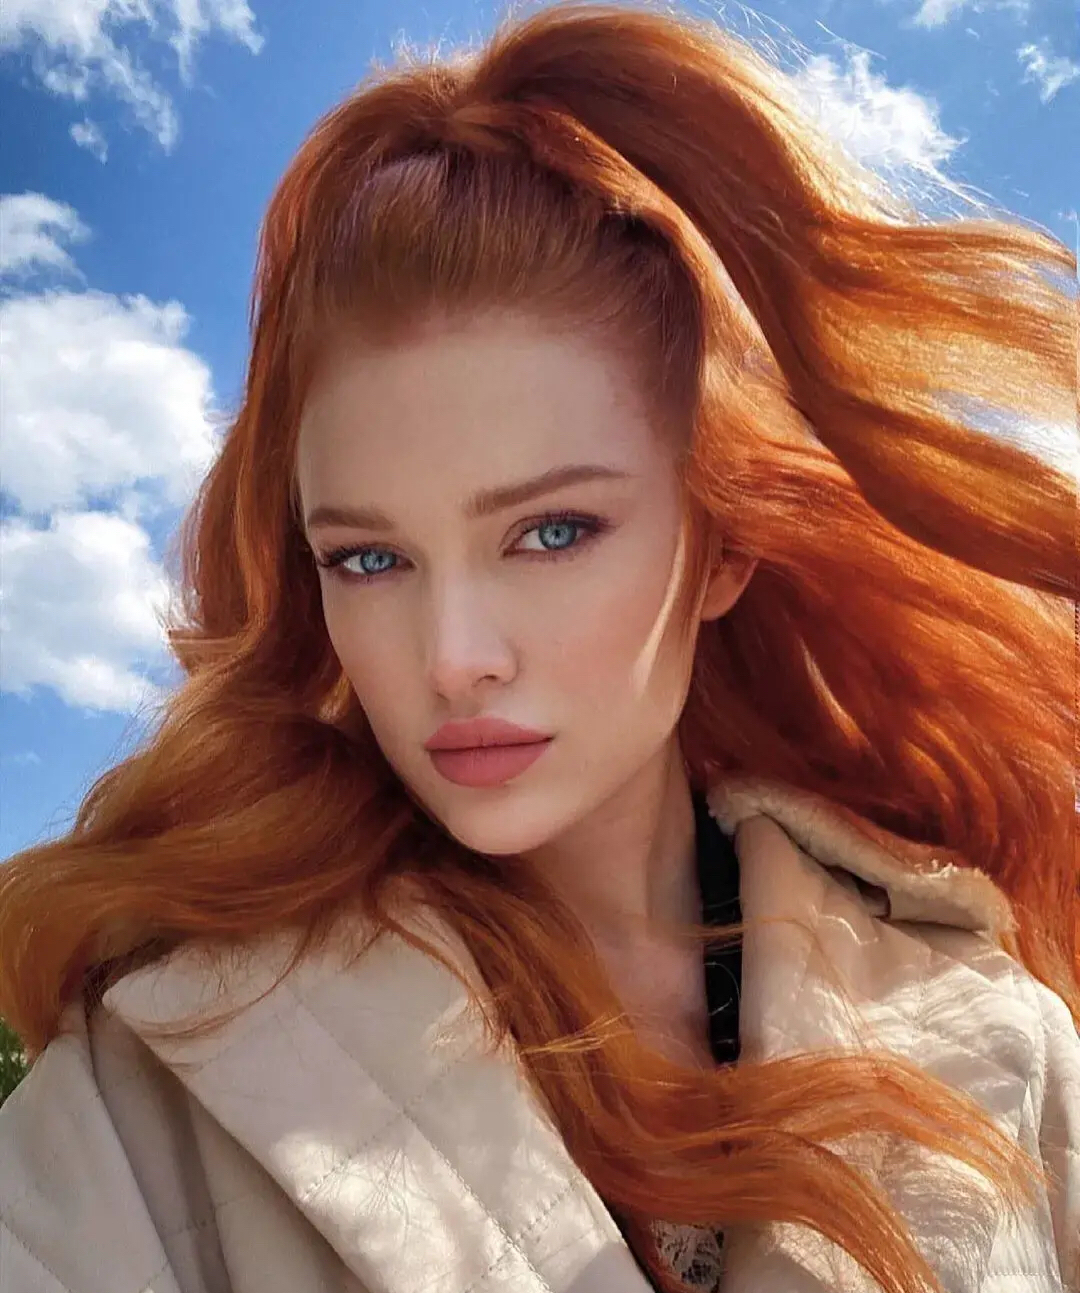 安吉丽娜·米歇尔被称为这个星球上最美丽的红头发女孩